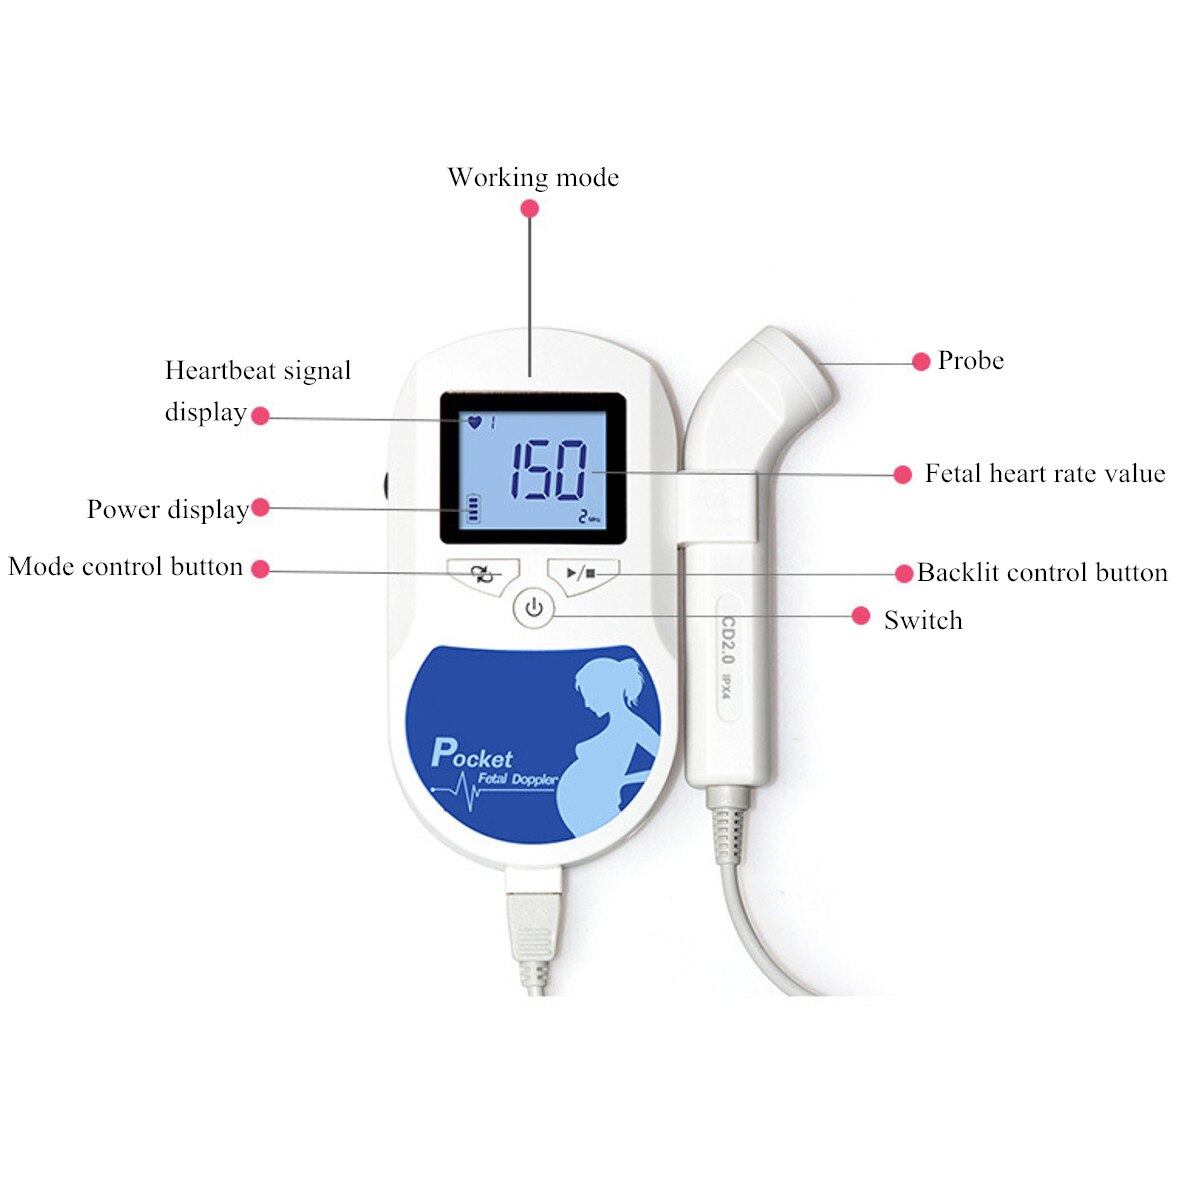 Détecteur de Doppler fœtal domestique affichage LCD bébé battement de coeur moniteur sonore santé sonde prénatale compteur de soins de santé Doppler de poche